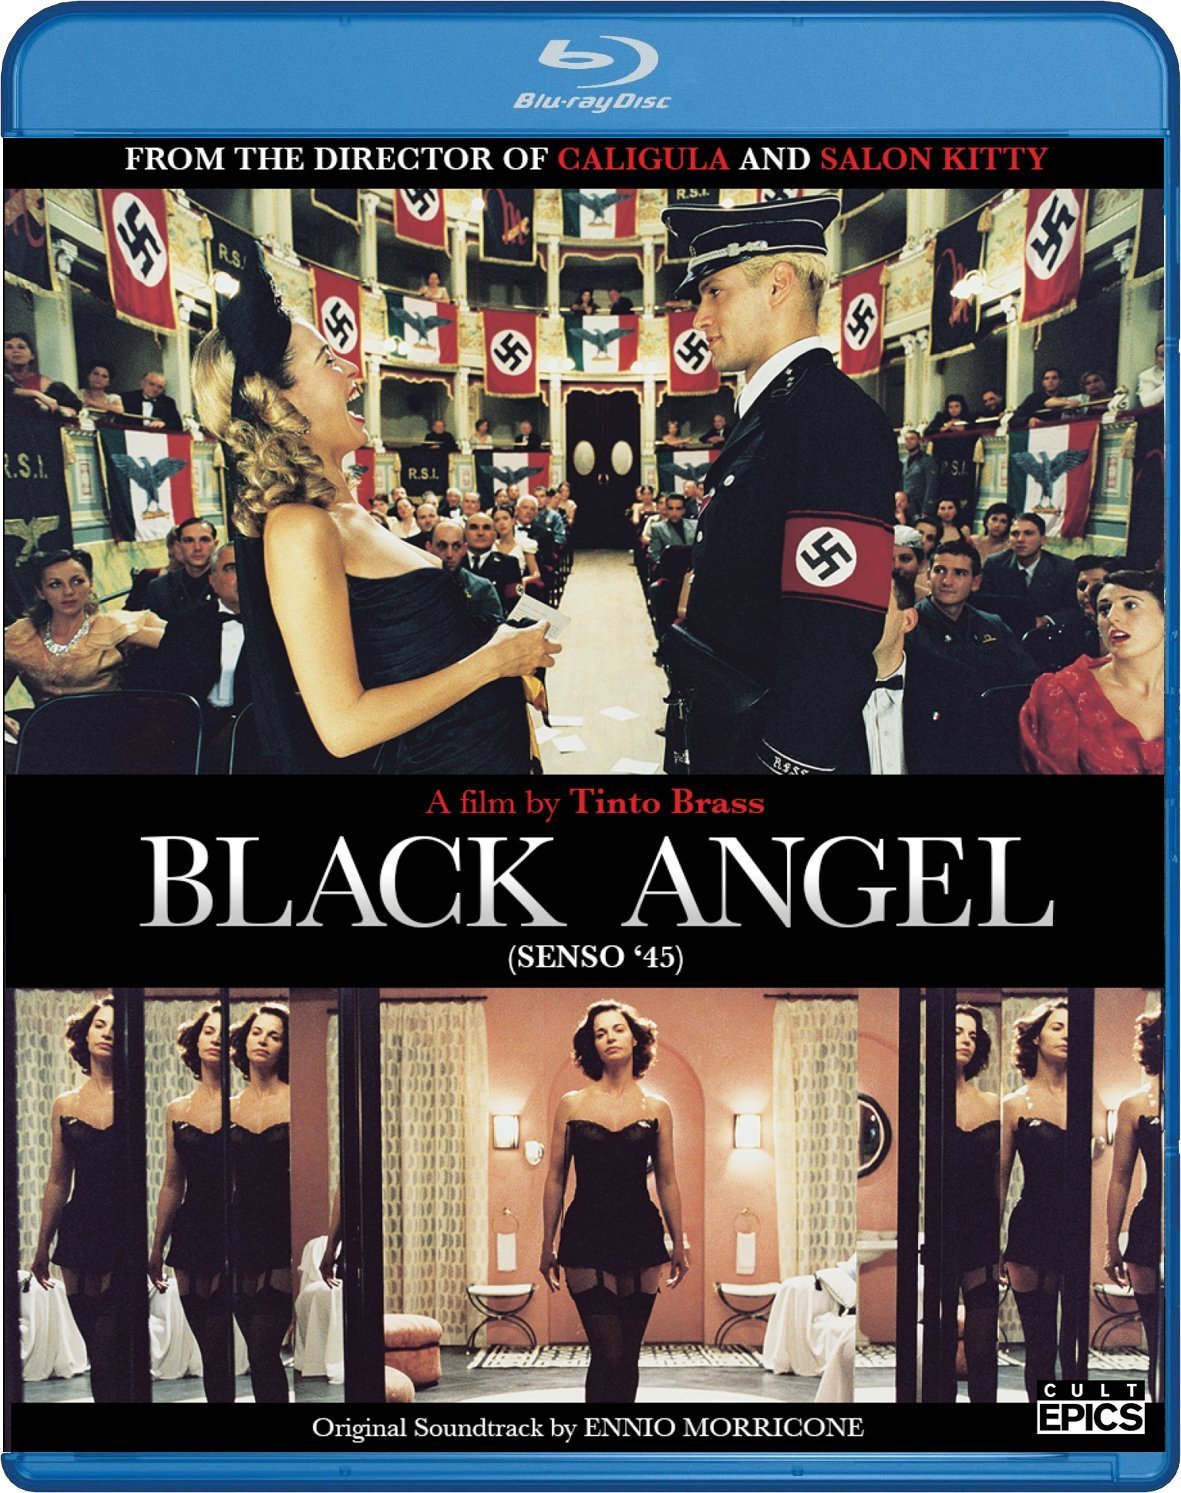 黑天使 | 美版原盘【DIY简繁字幕】| 丁度·巴拉斯作品 Black Angel 2002 1080p USA Blu-ray AVC DD5.1-IWUBEN@OurBits    [36.5 GB]-1.jpg